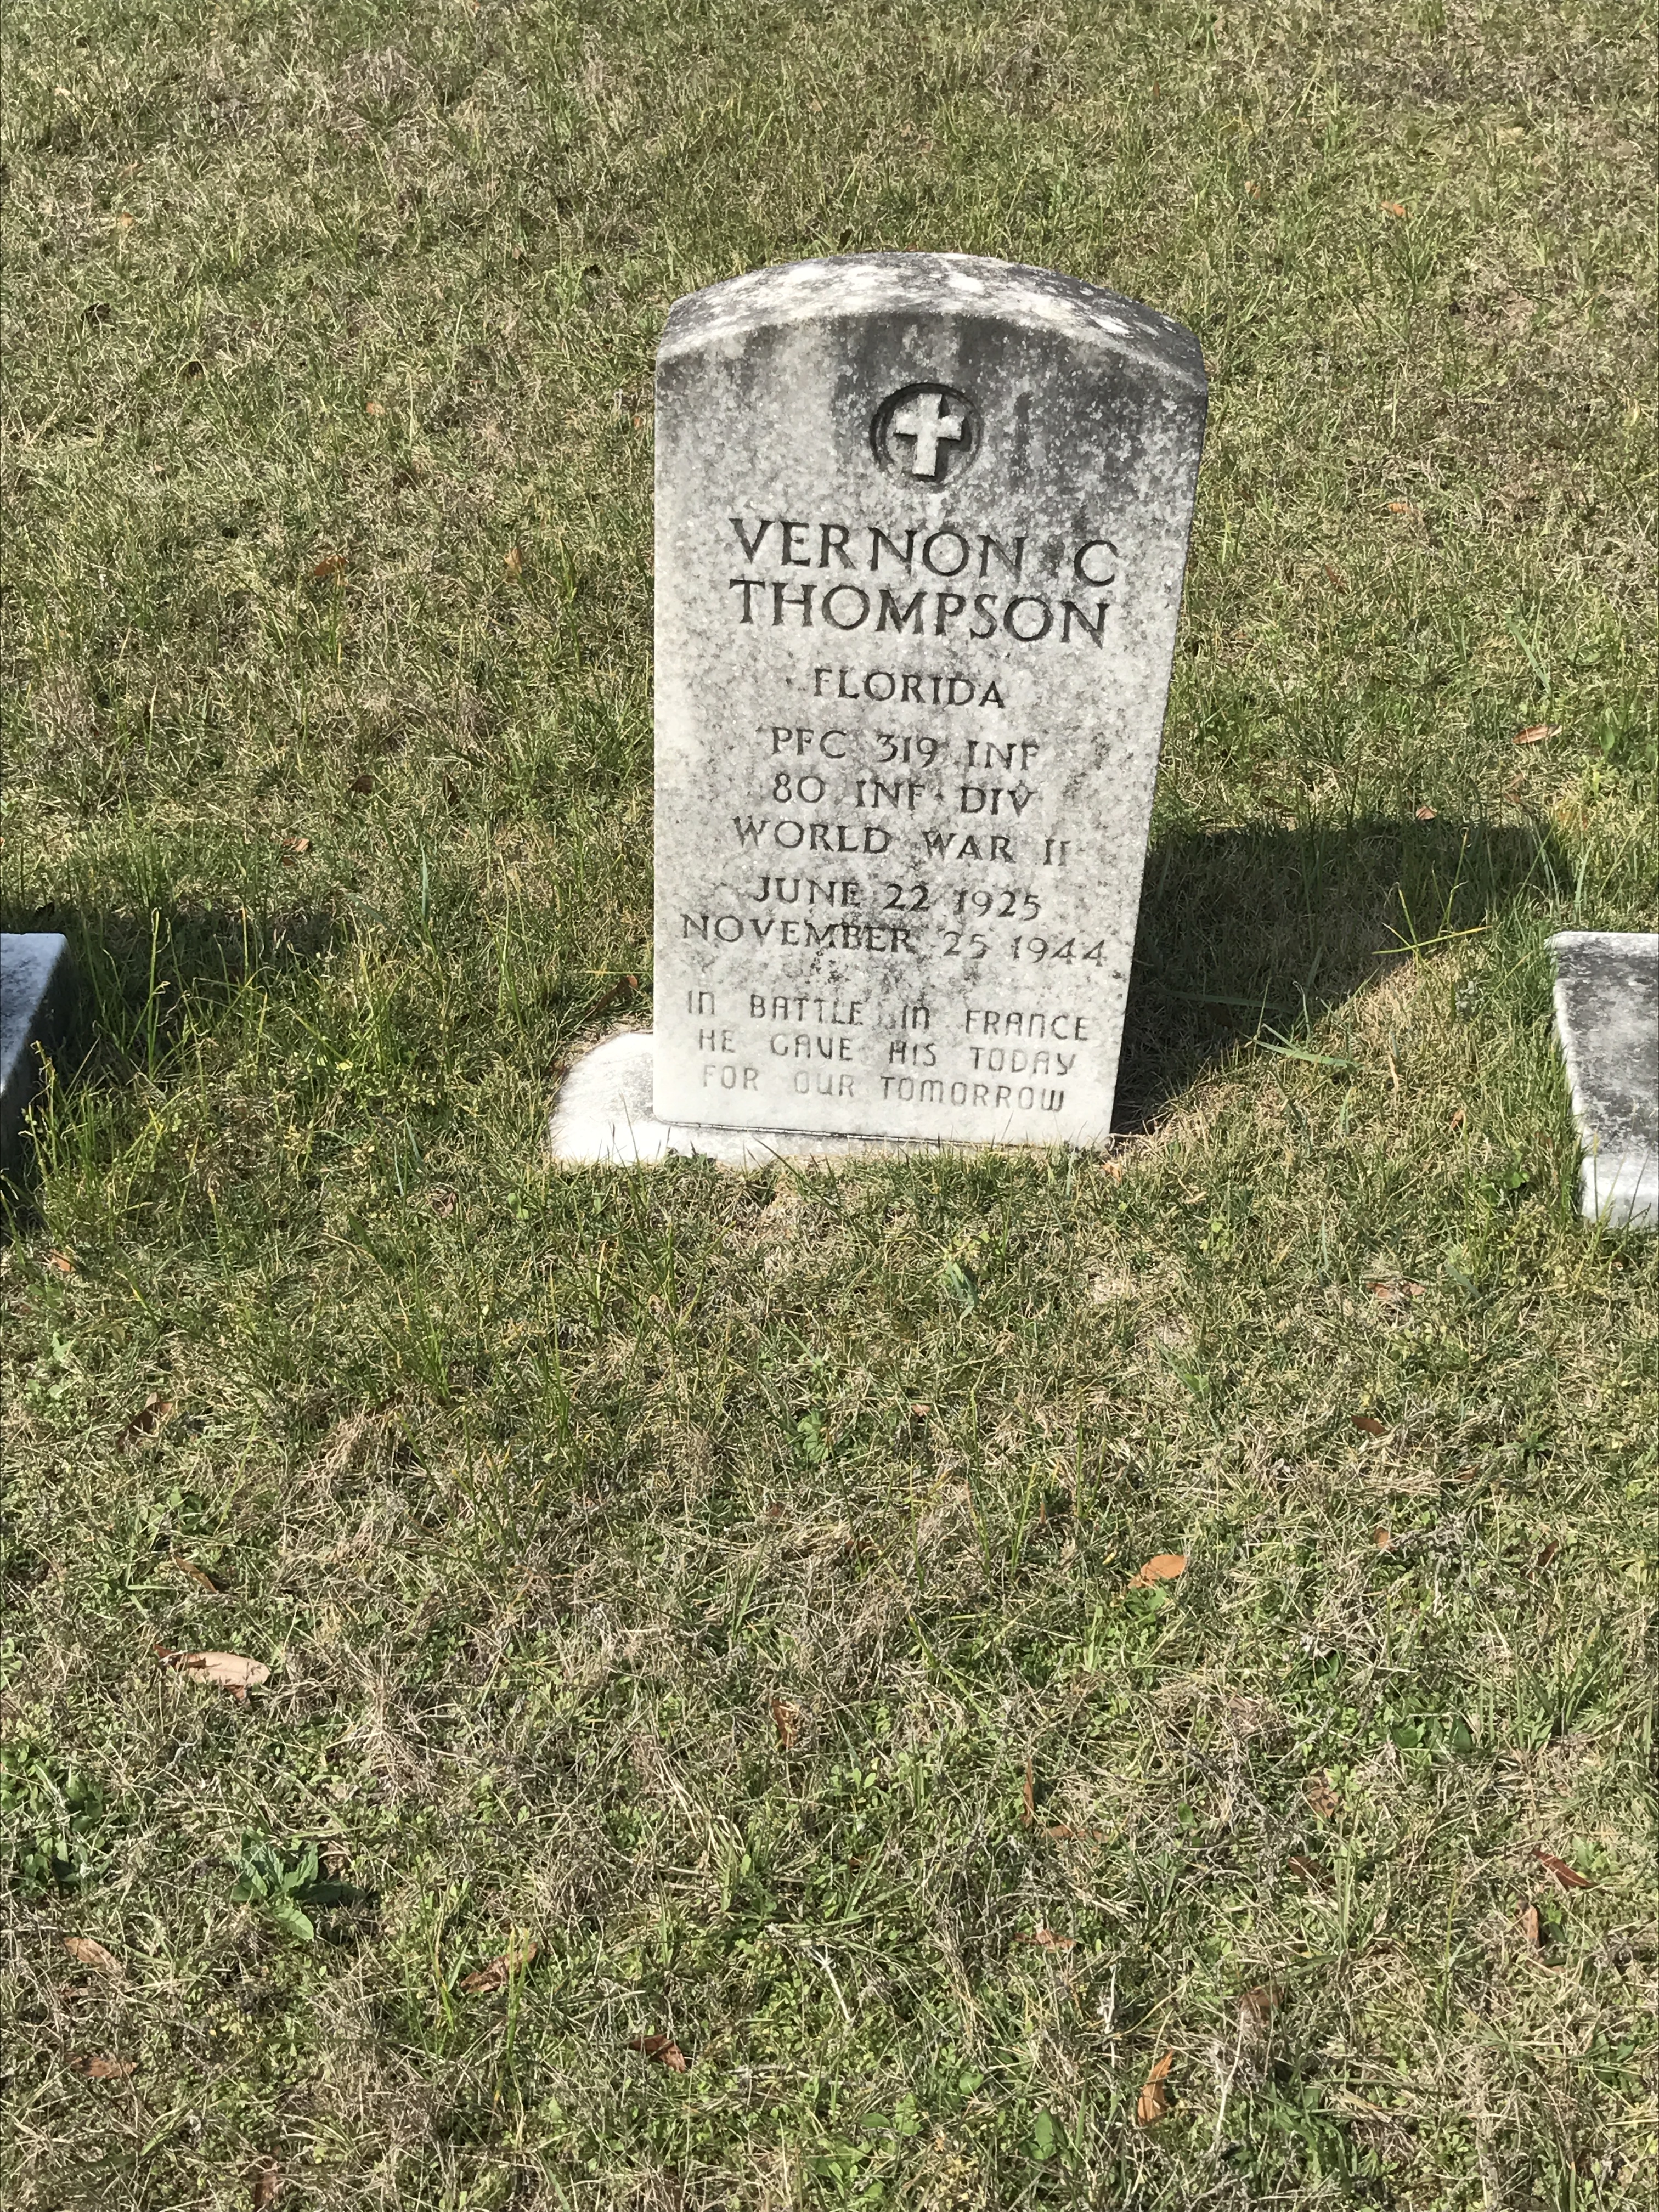 Vernon C. Thompson